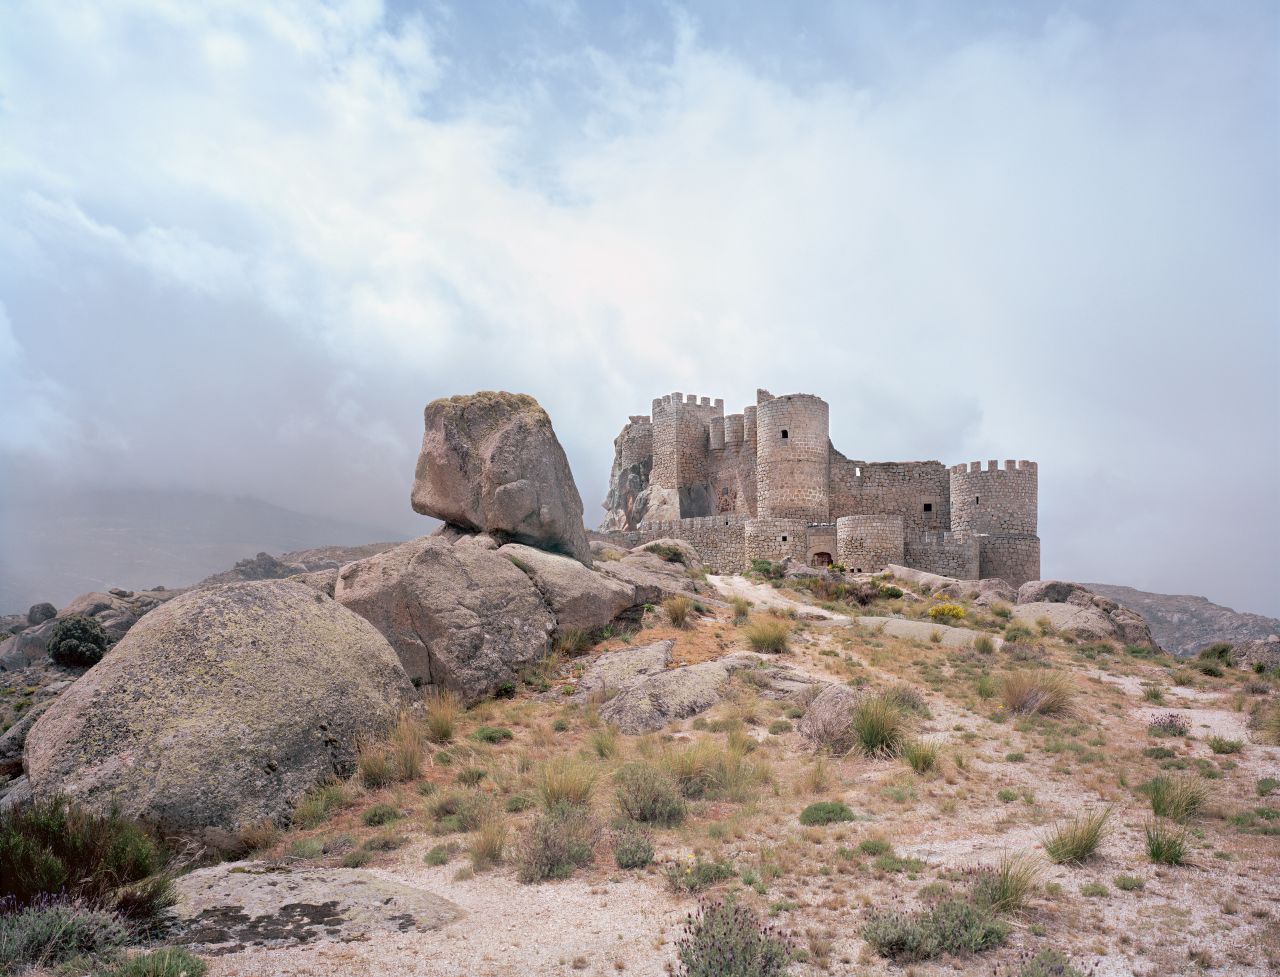 Lâu đài Manqueospese ở Tây Ban Nha dường như tan chảy vào cảnh quan đá granit mặt trăng.